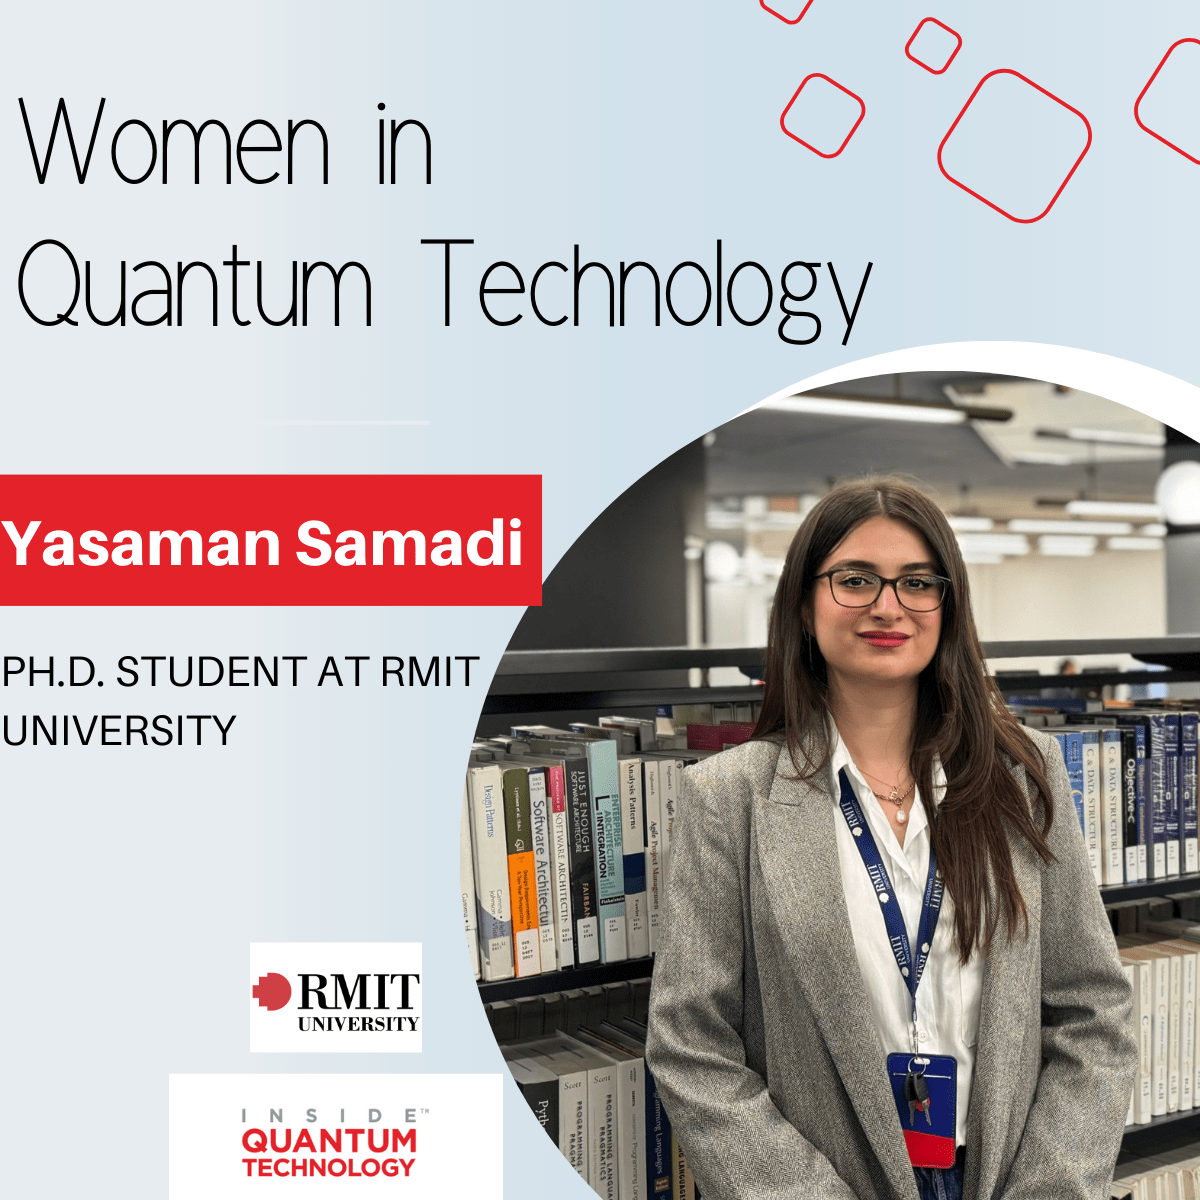 Frauen der Quantentechnologie: Yasaman Samadi von der RMIT University – Inside Quantum Technology